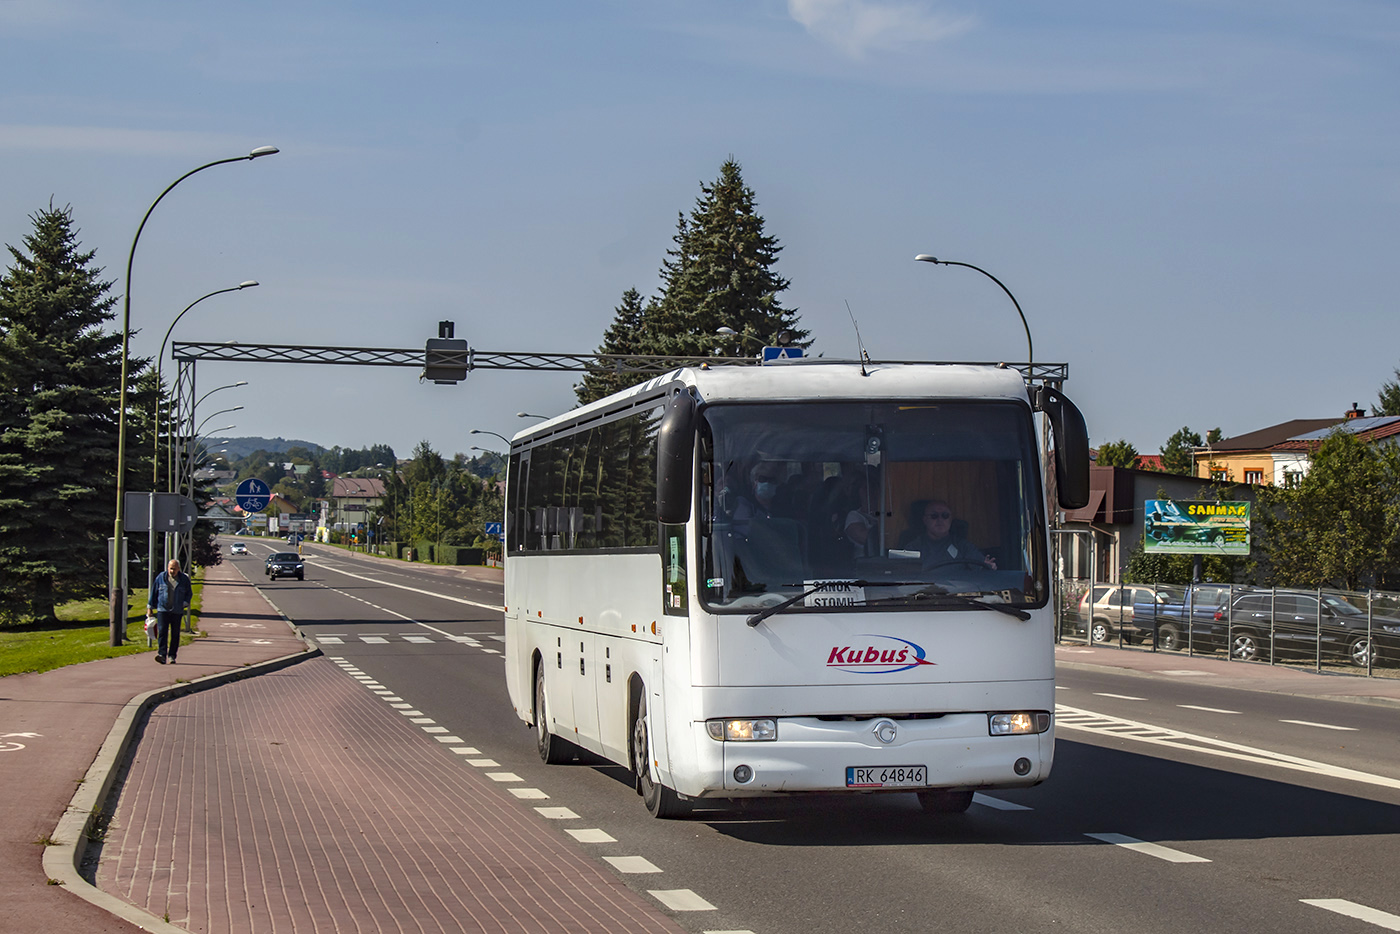 Krosno, Irisbus Iliade № RK 64846